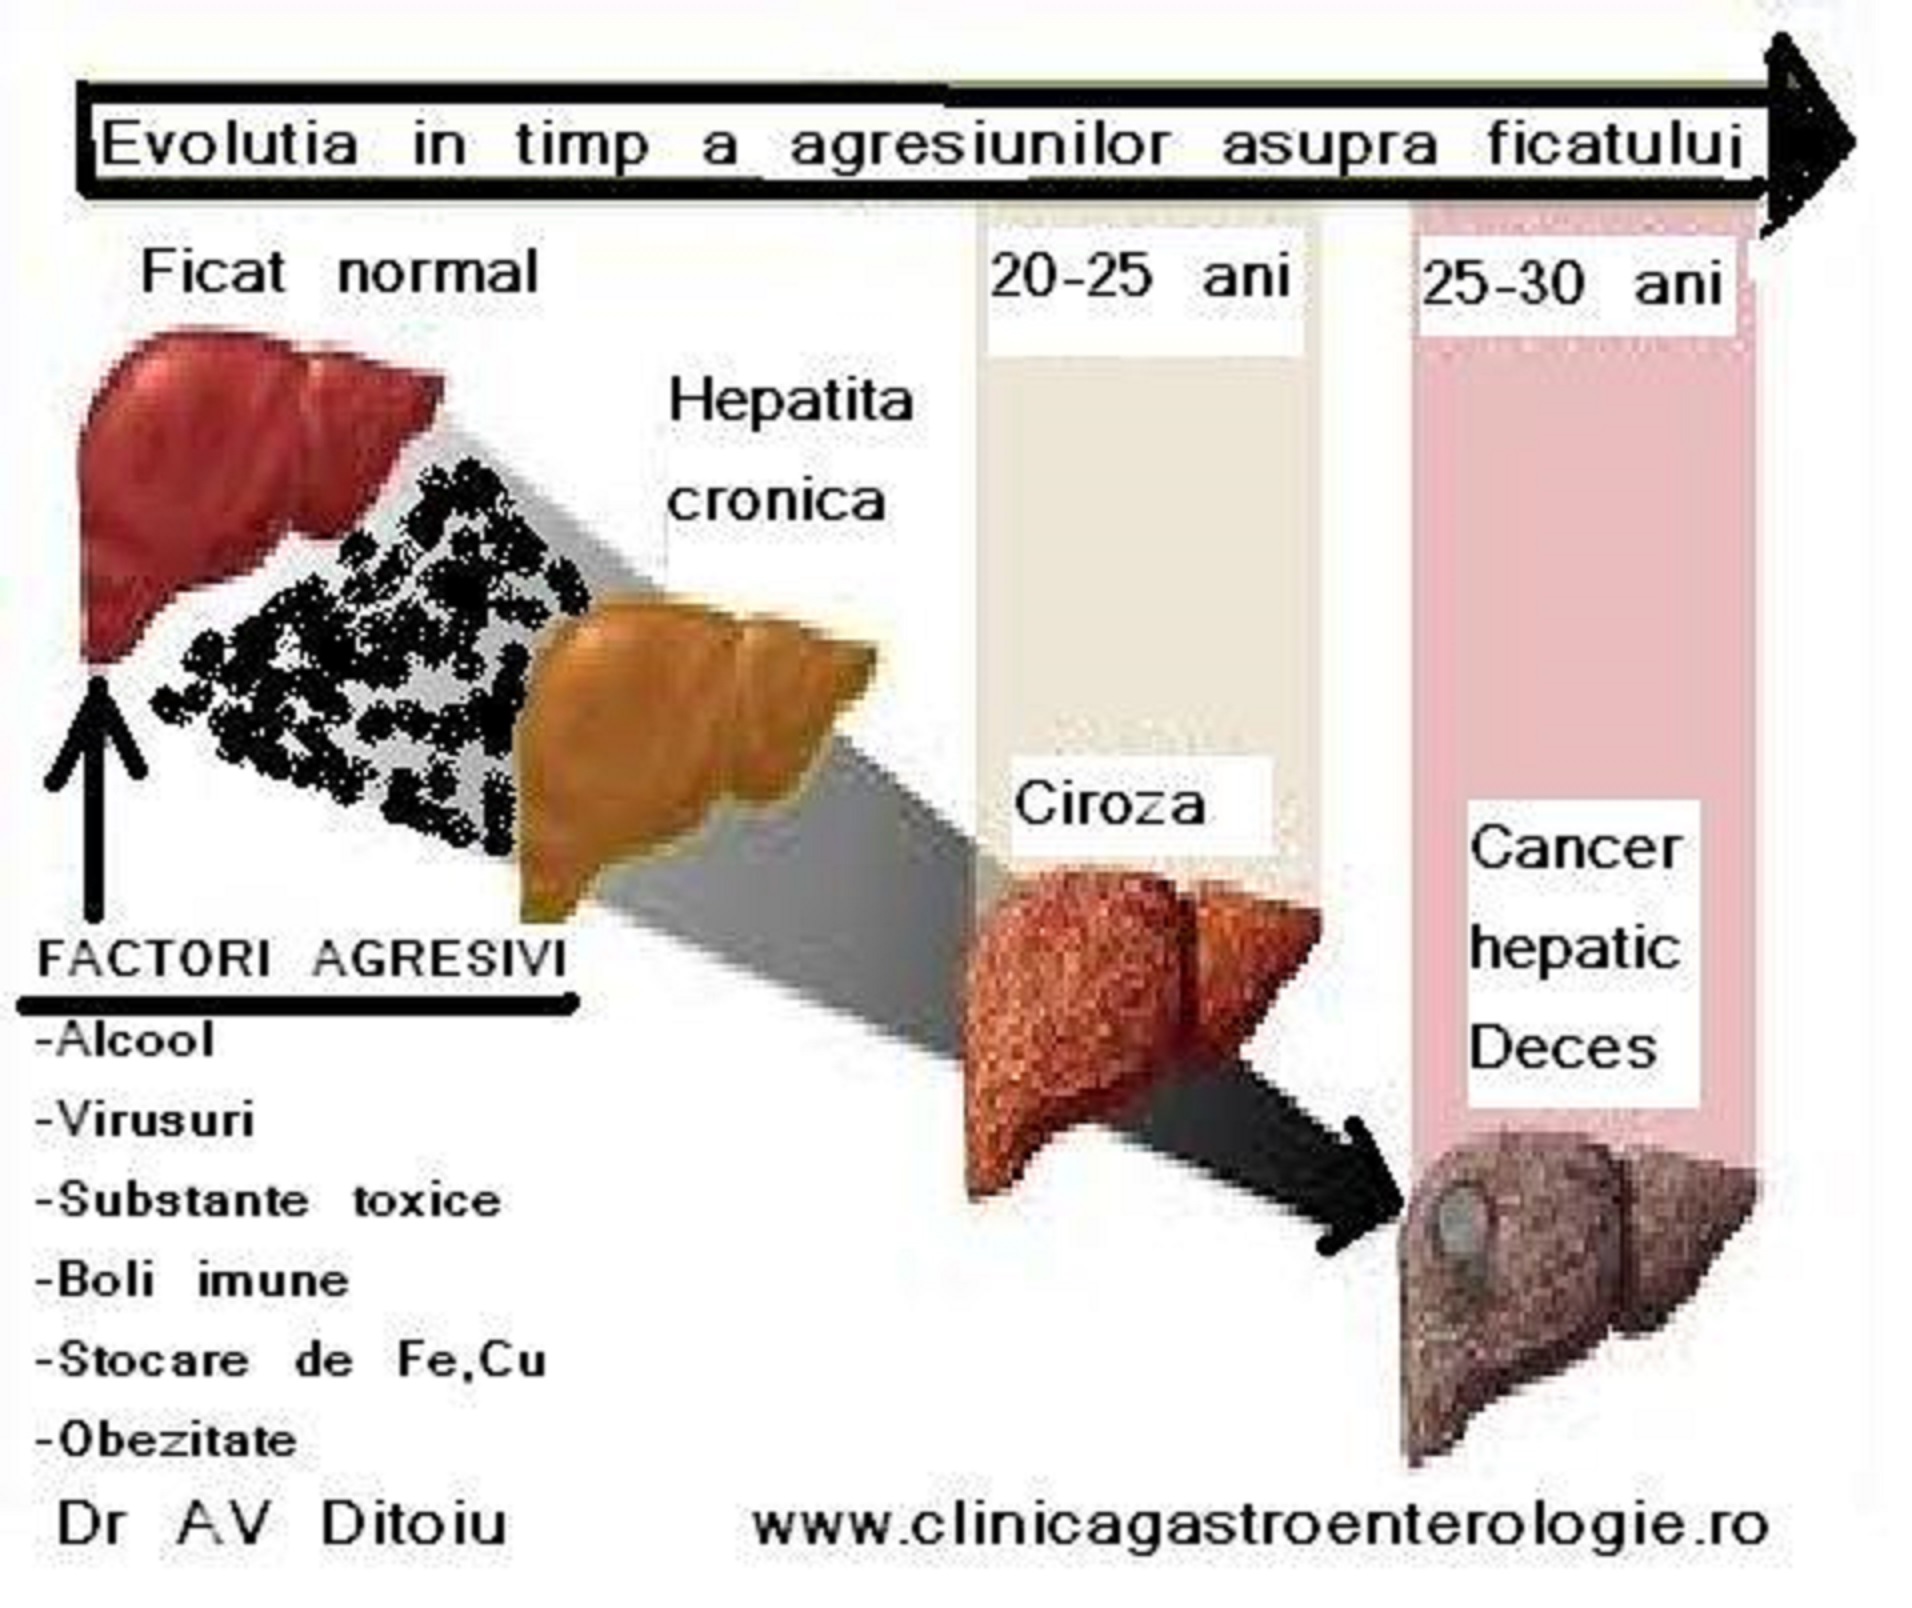 Hepatita C cu evolutie galopanta